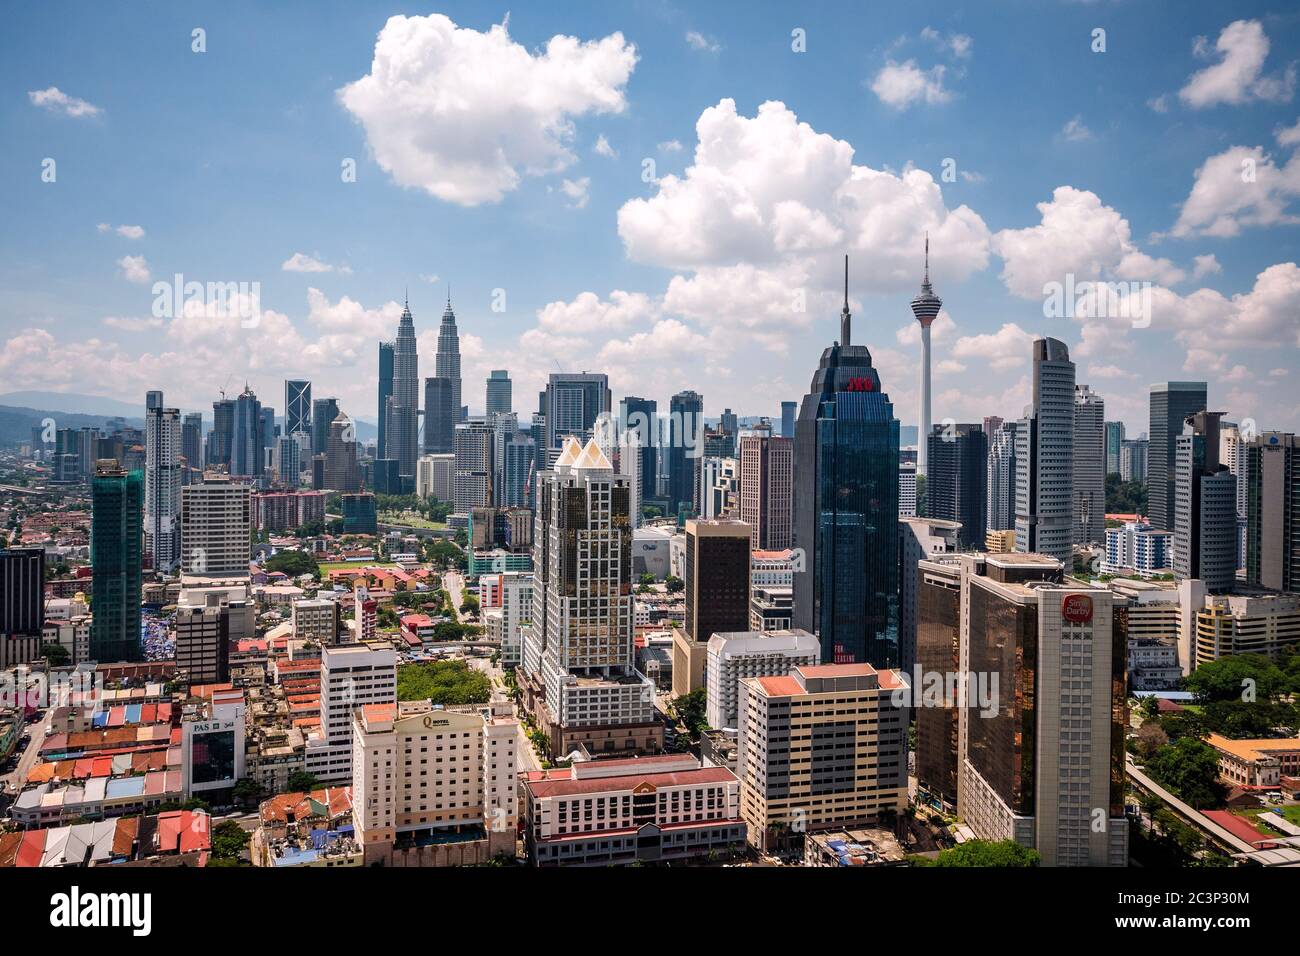 Vista aérea del paisaje urbano de Kuala Lumpur, incluyendo las Torres Gemelas Petronas, un monumento nacional, en un día soleado en Kuala Lumpur, Malasia. Foto de stock